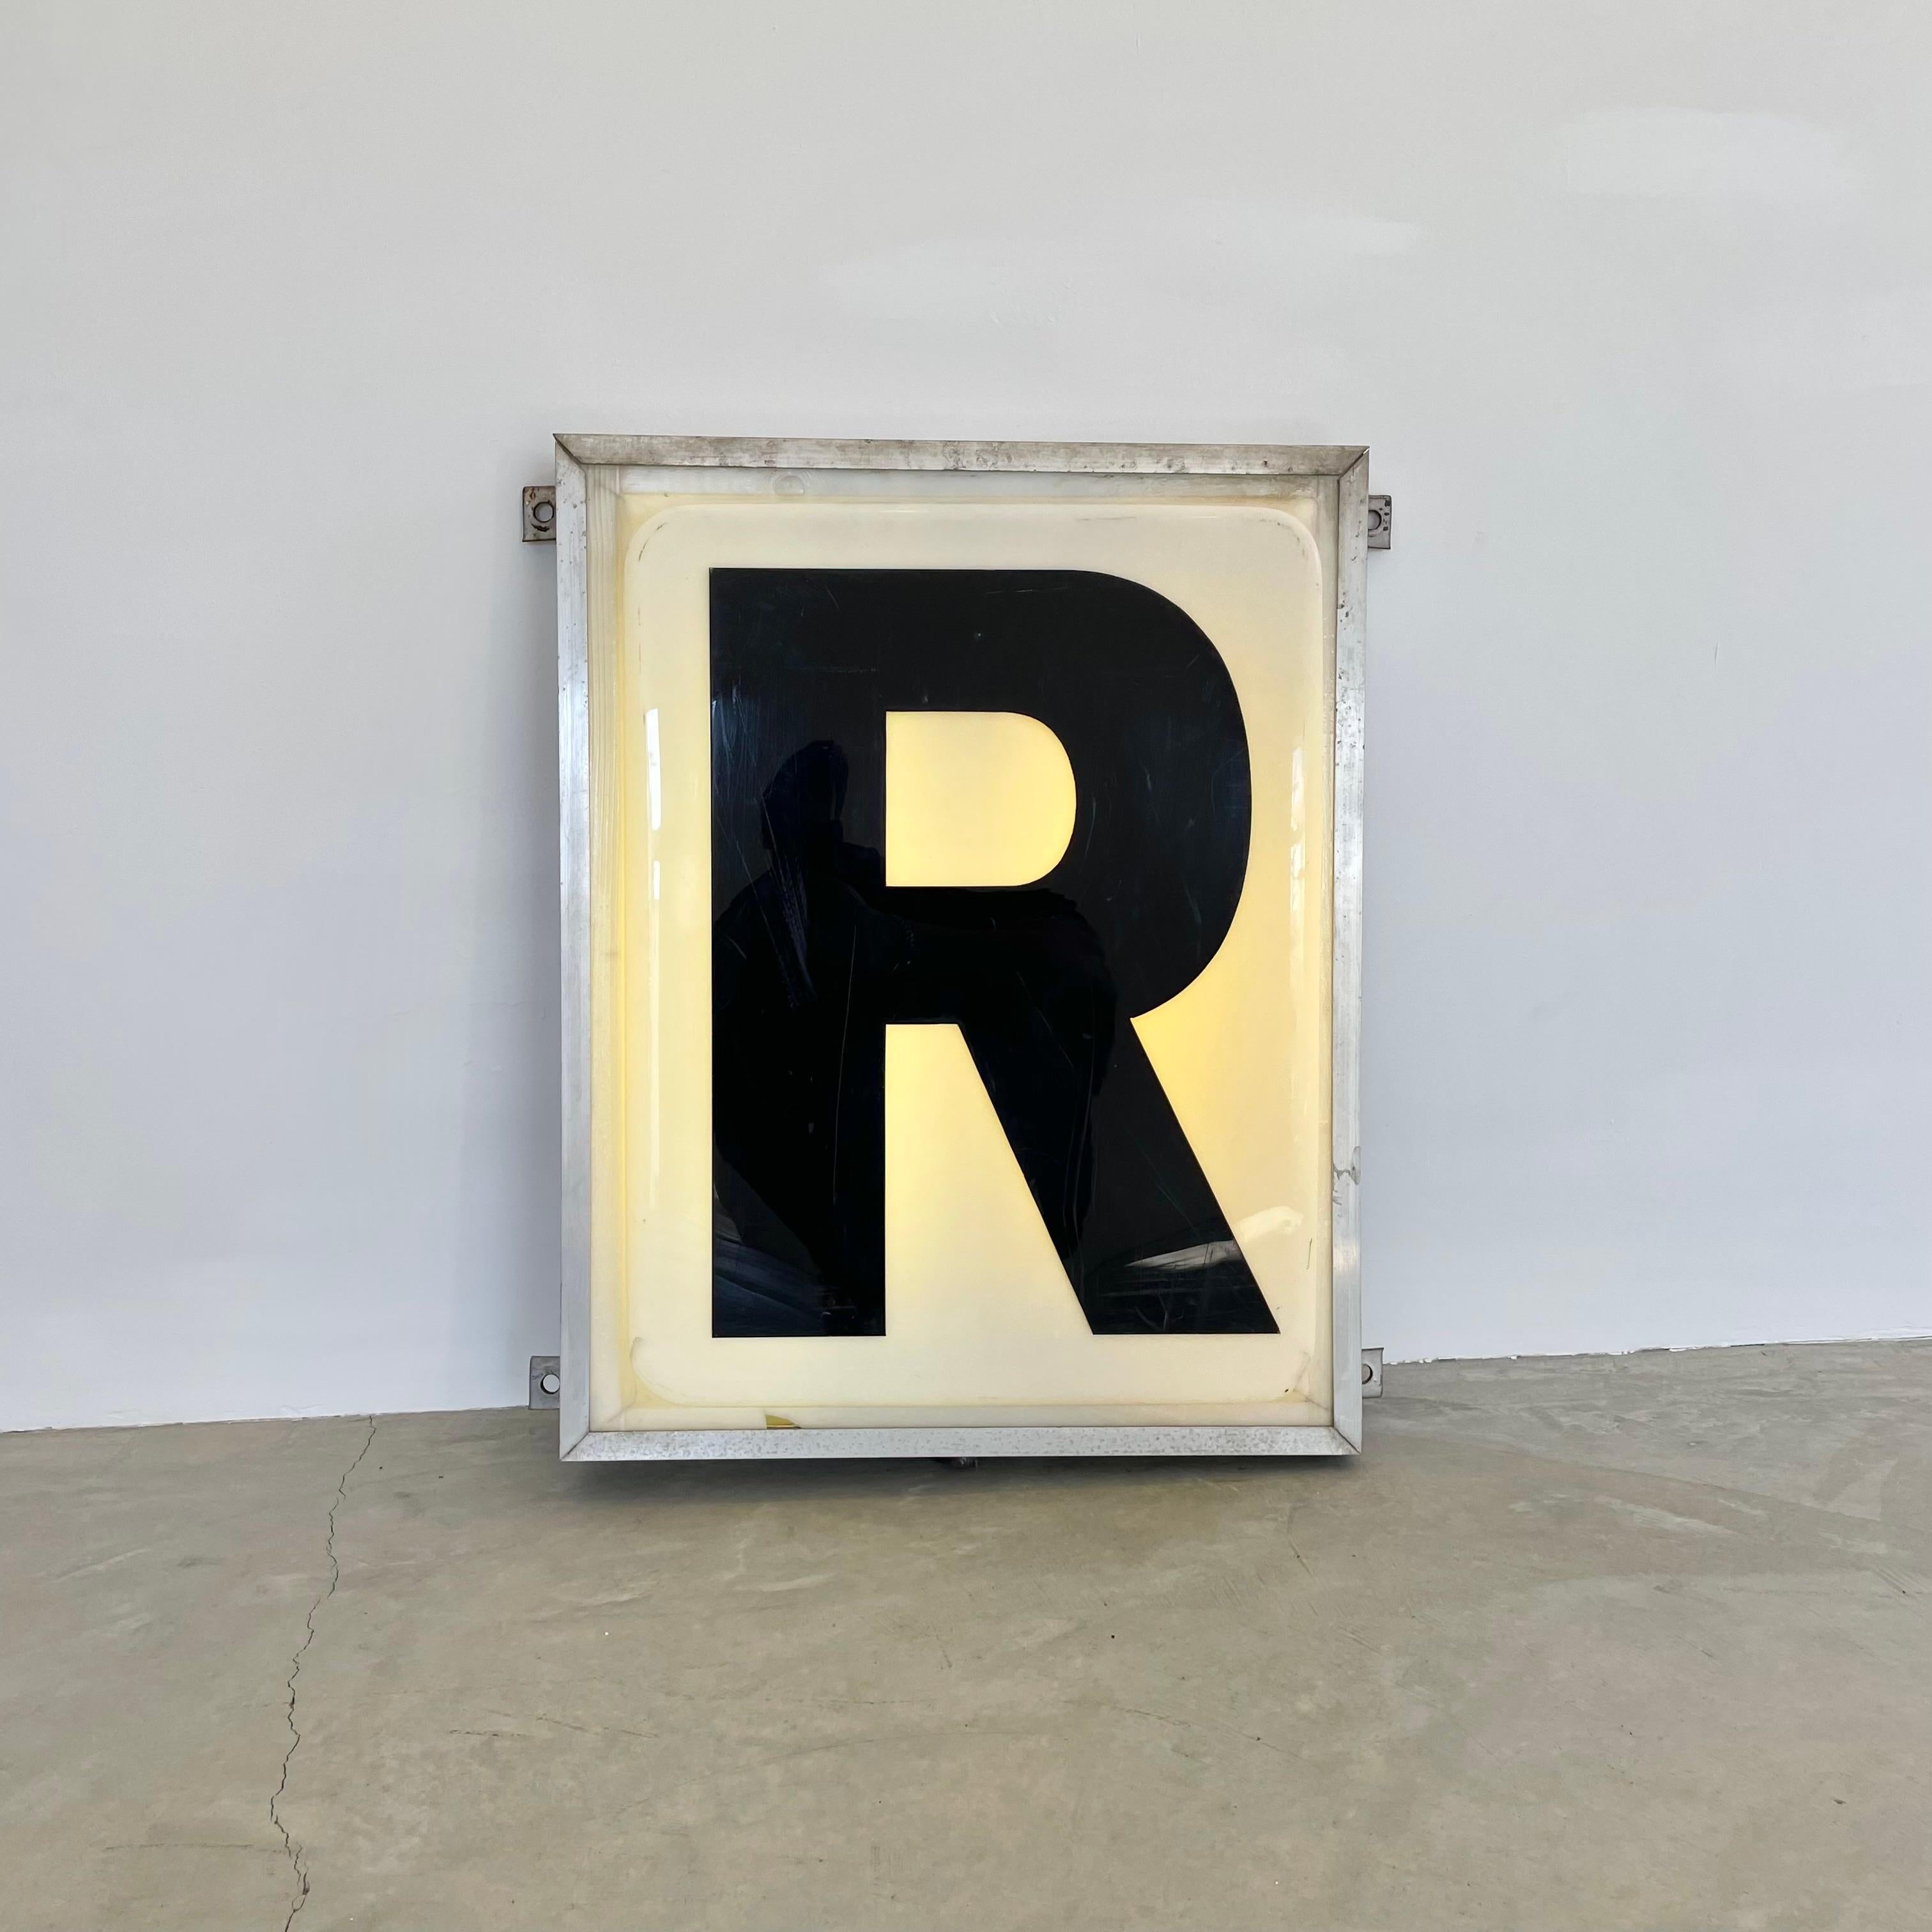 Großes industrielles elektrisches Leuchtbuchstaben 'R' Schild aus einer Notaufnahme im Nordwesten der USA. 2 Fuß breit und 2,5 Fuß hoch. Der Buchstabe 